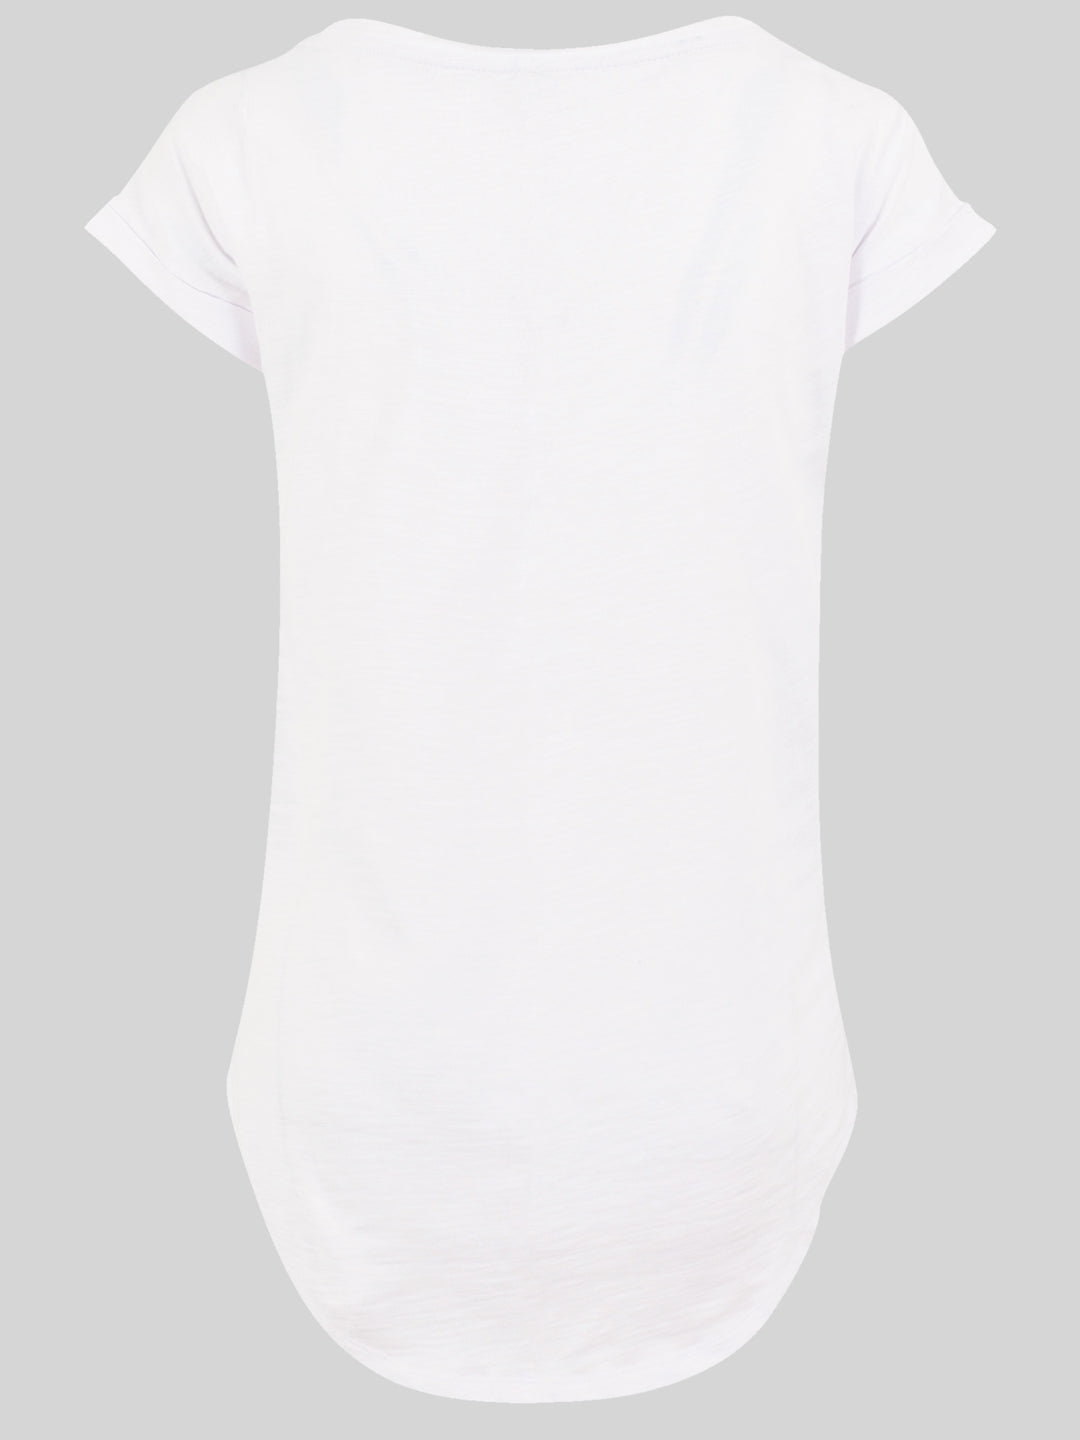 Pink Floyd T-Shirt | Fat Pig | Premium Long Damen T Shirt